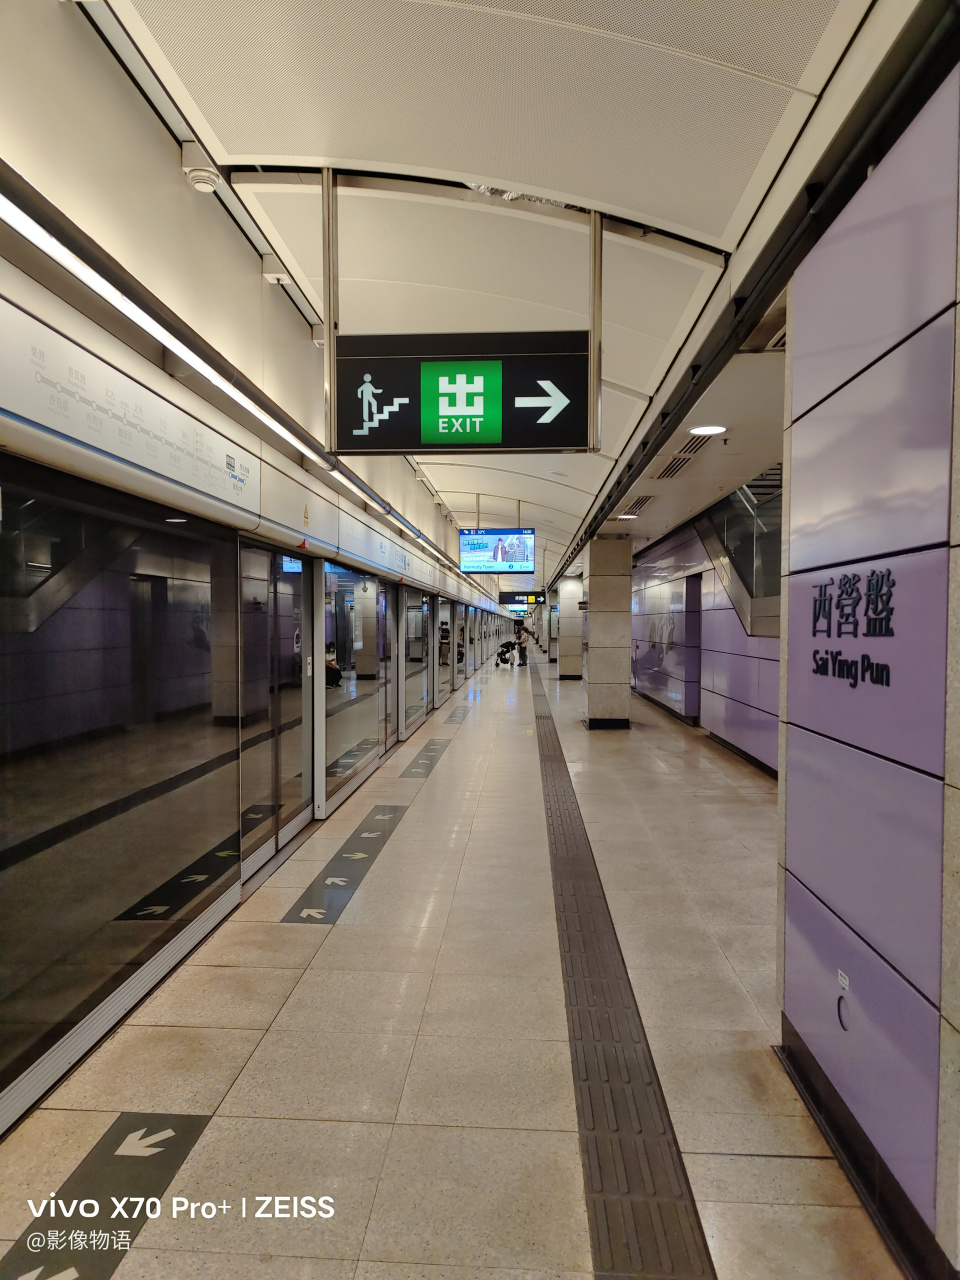 香港地铁 港岛线 西营盘站